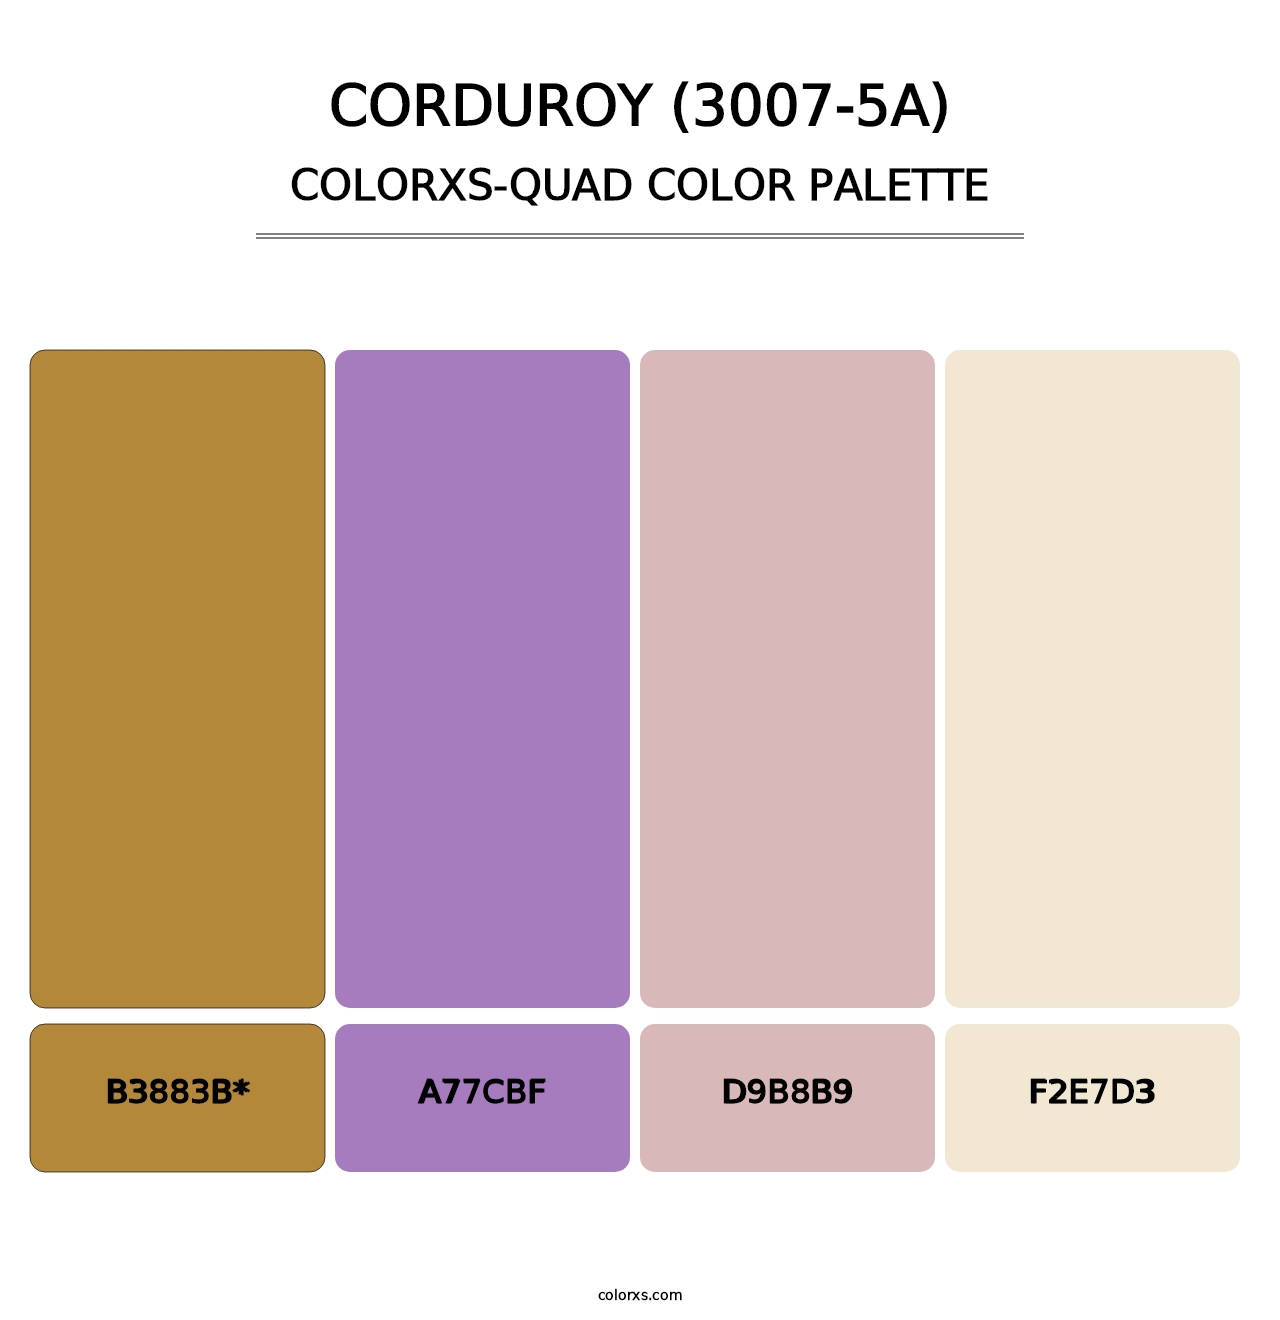 Corduroy (3007-5A) - Colorxs Quad Palette